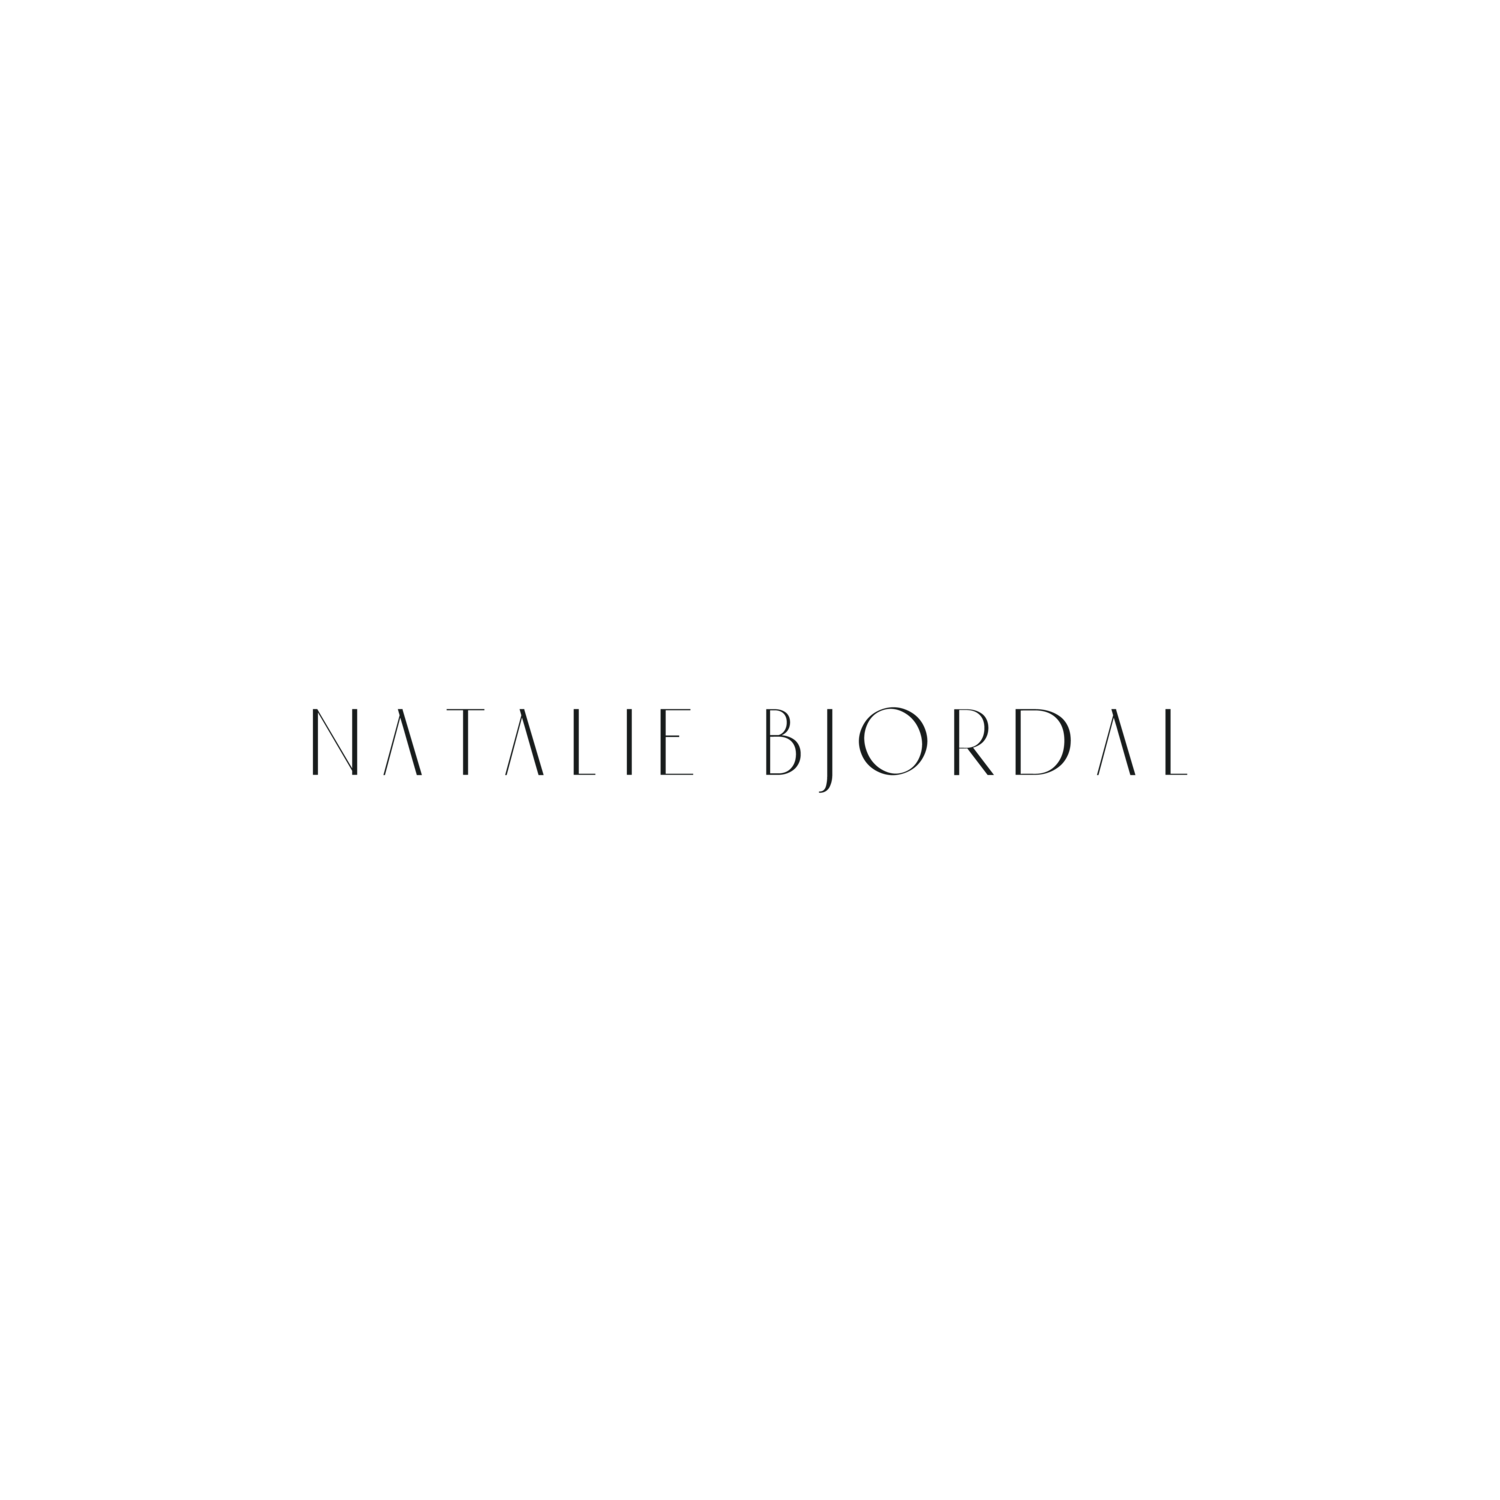 Natalie Bjordal